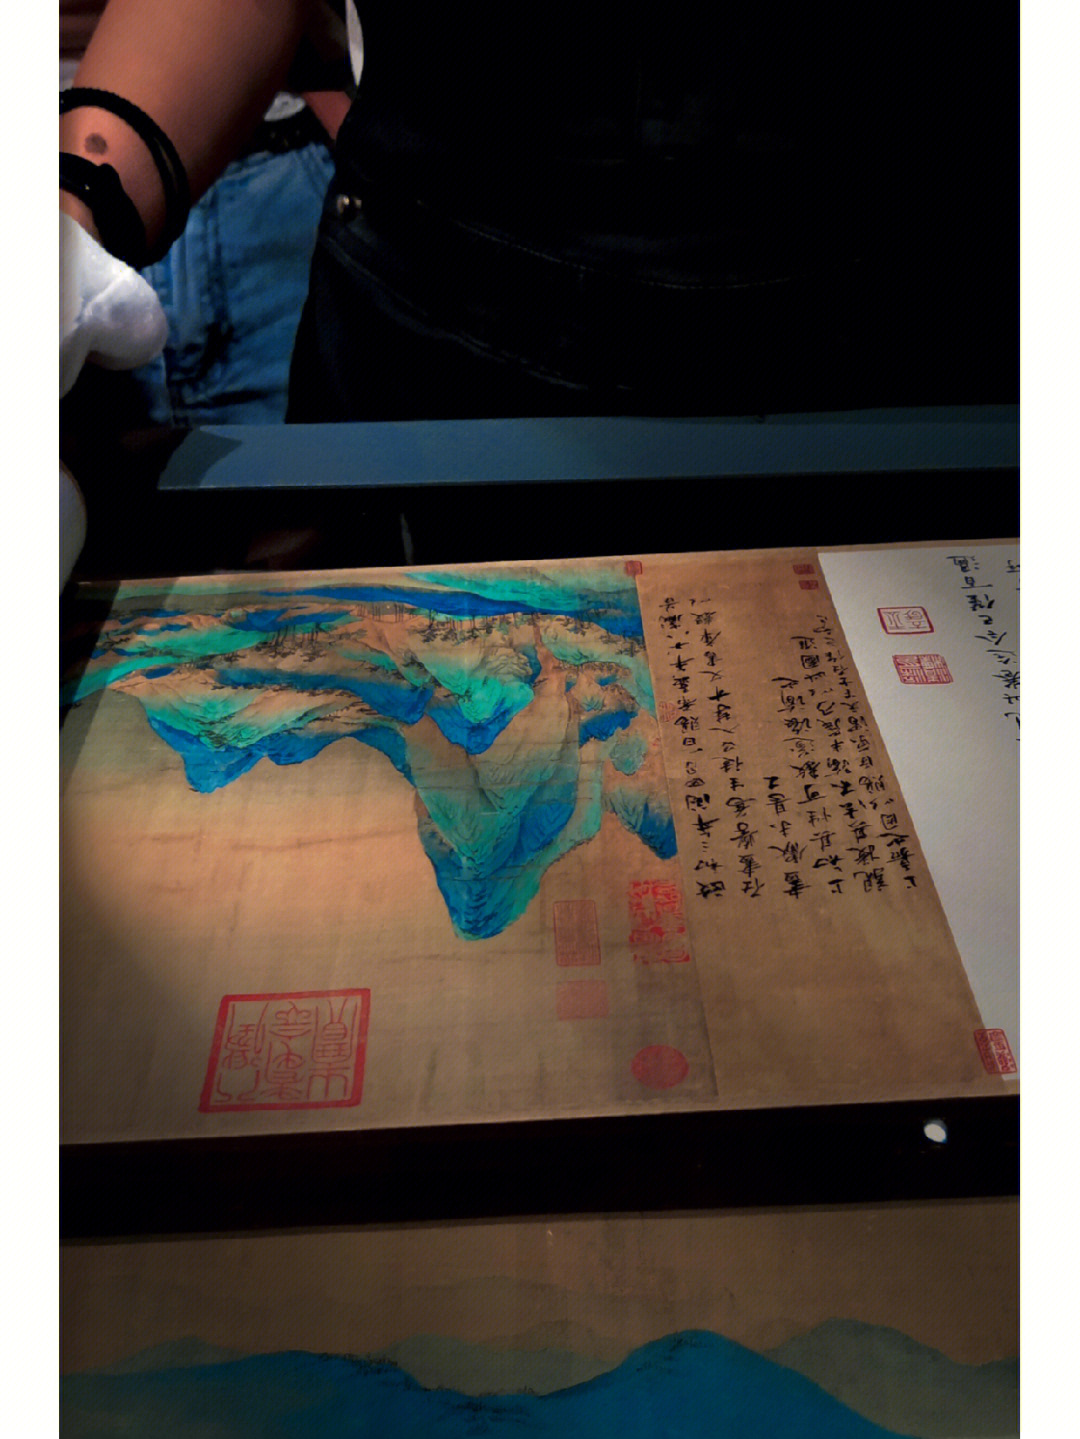 千里江山图展览时间图片